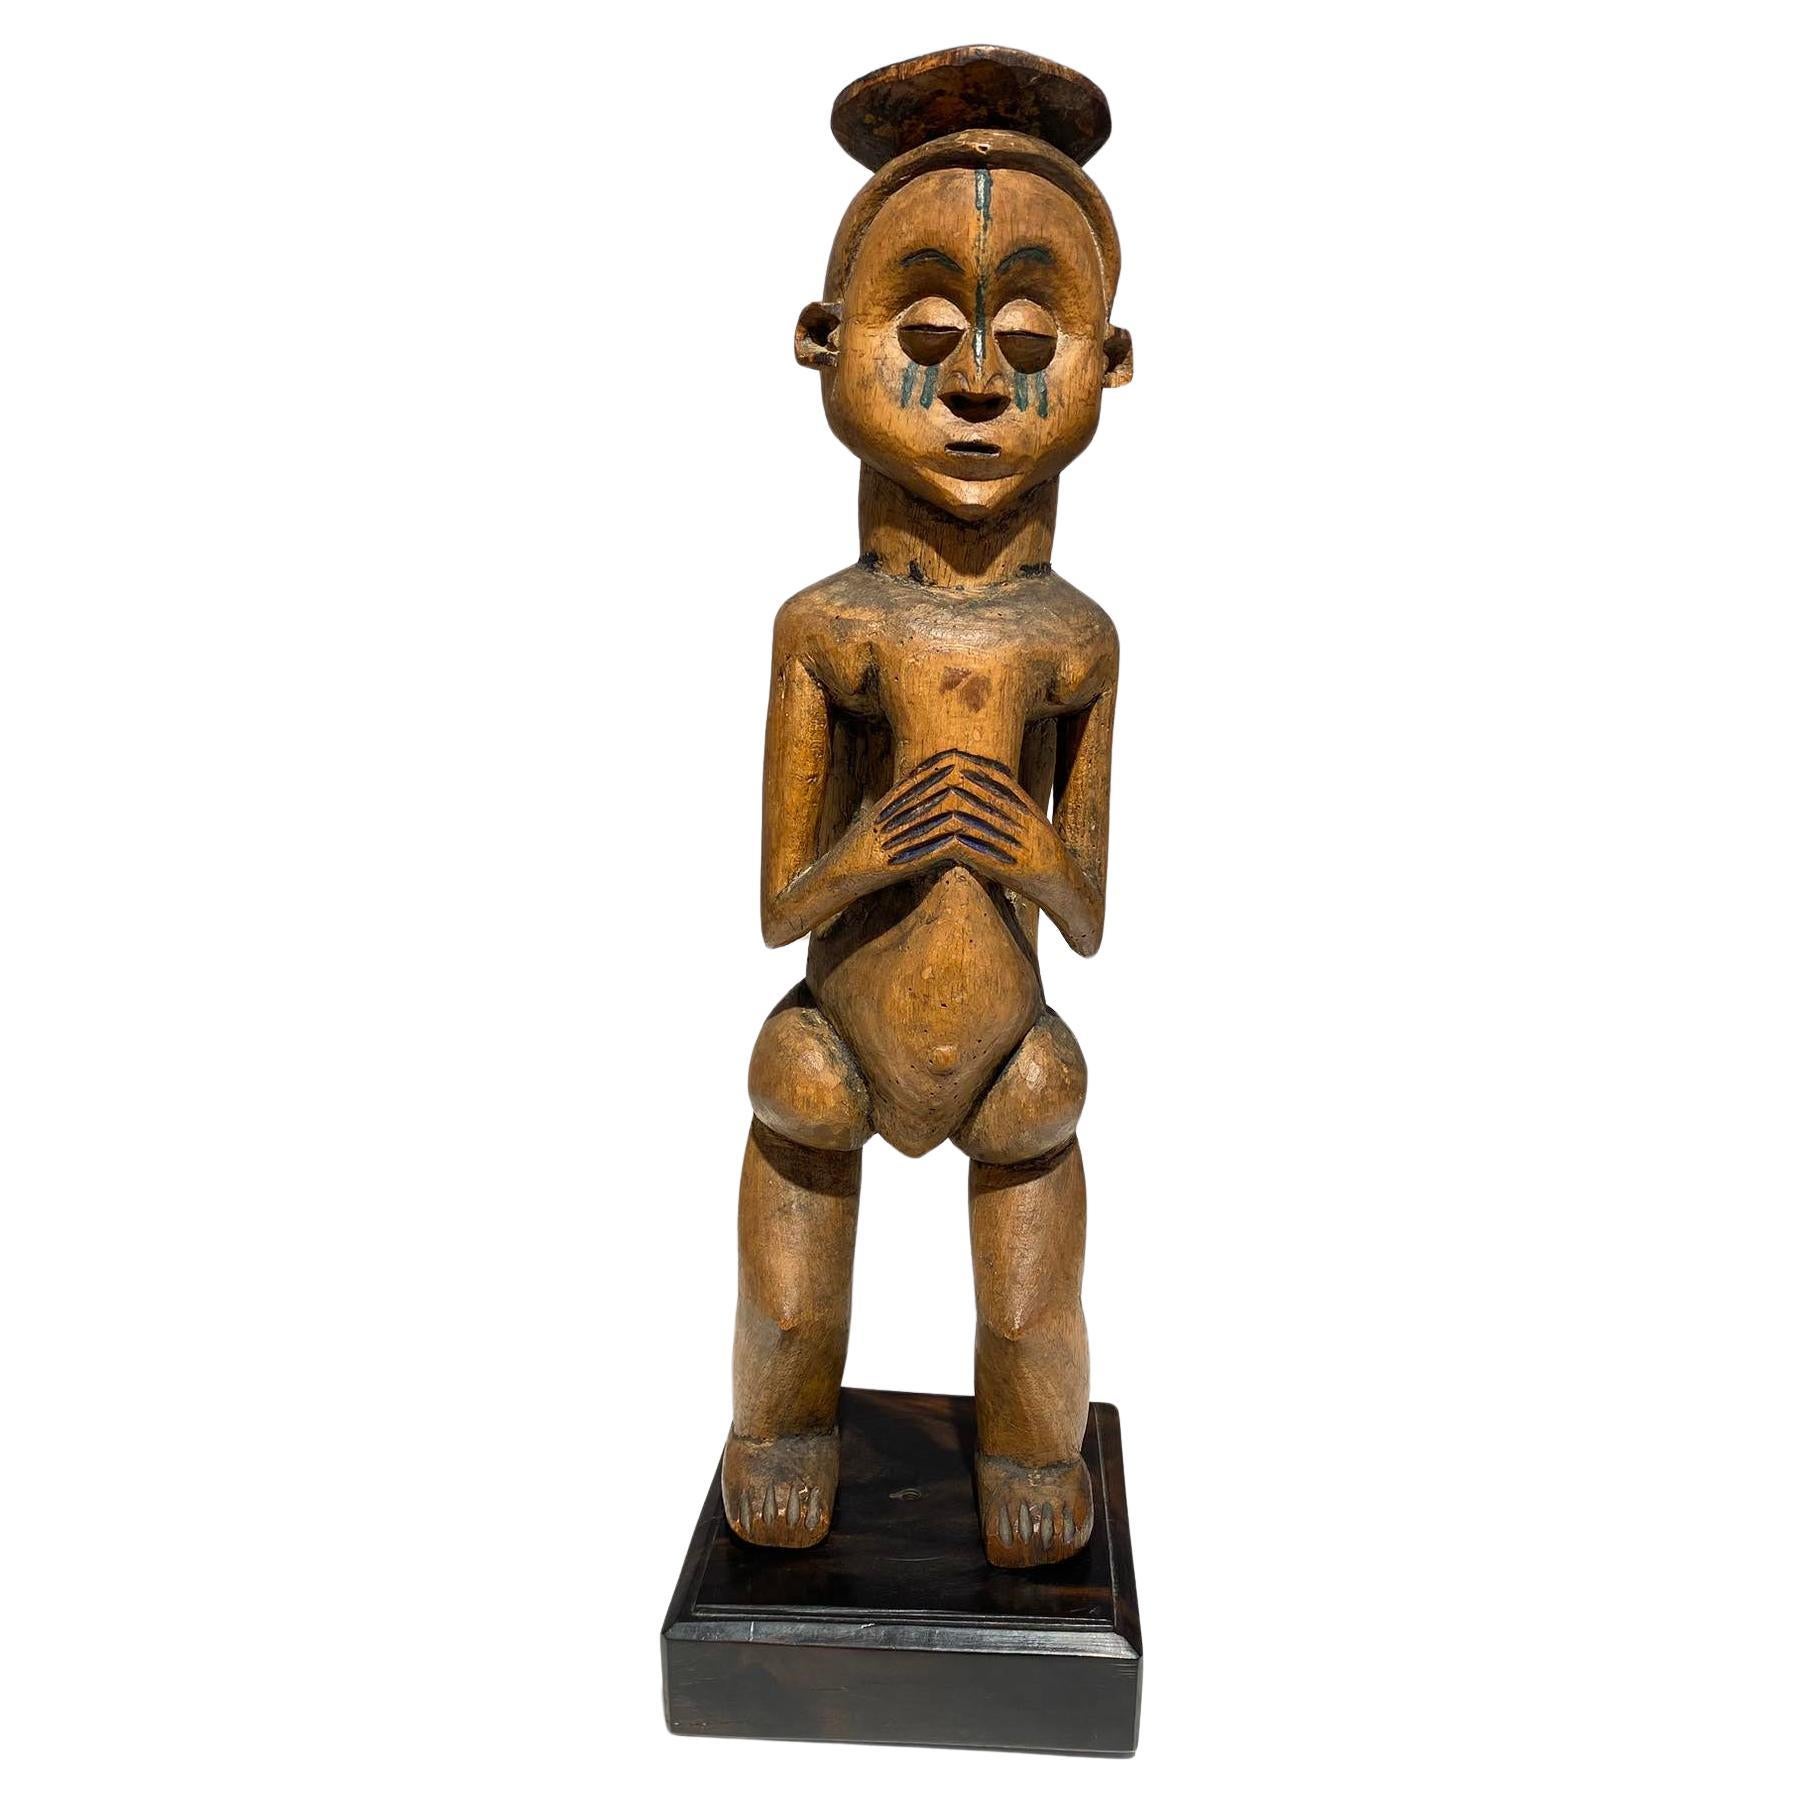 Superbe statue en bois Holo mvunzi de qualité muséale fin 19e siècle Congo